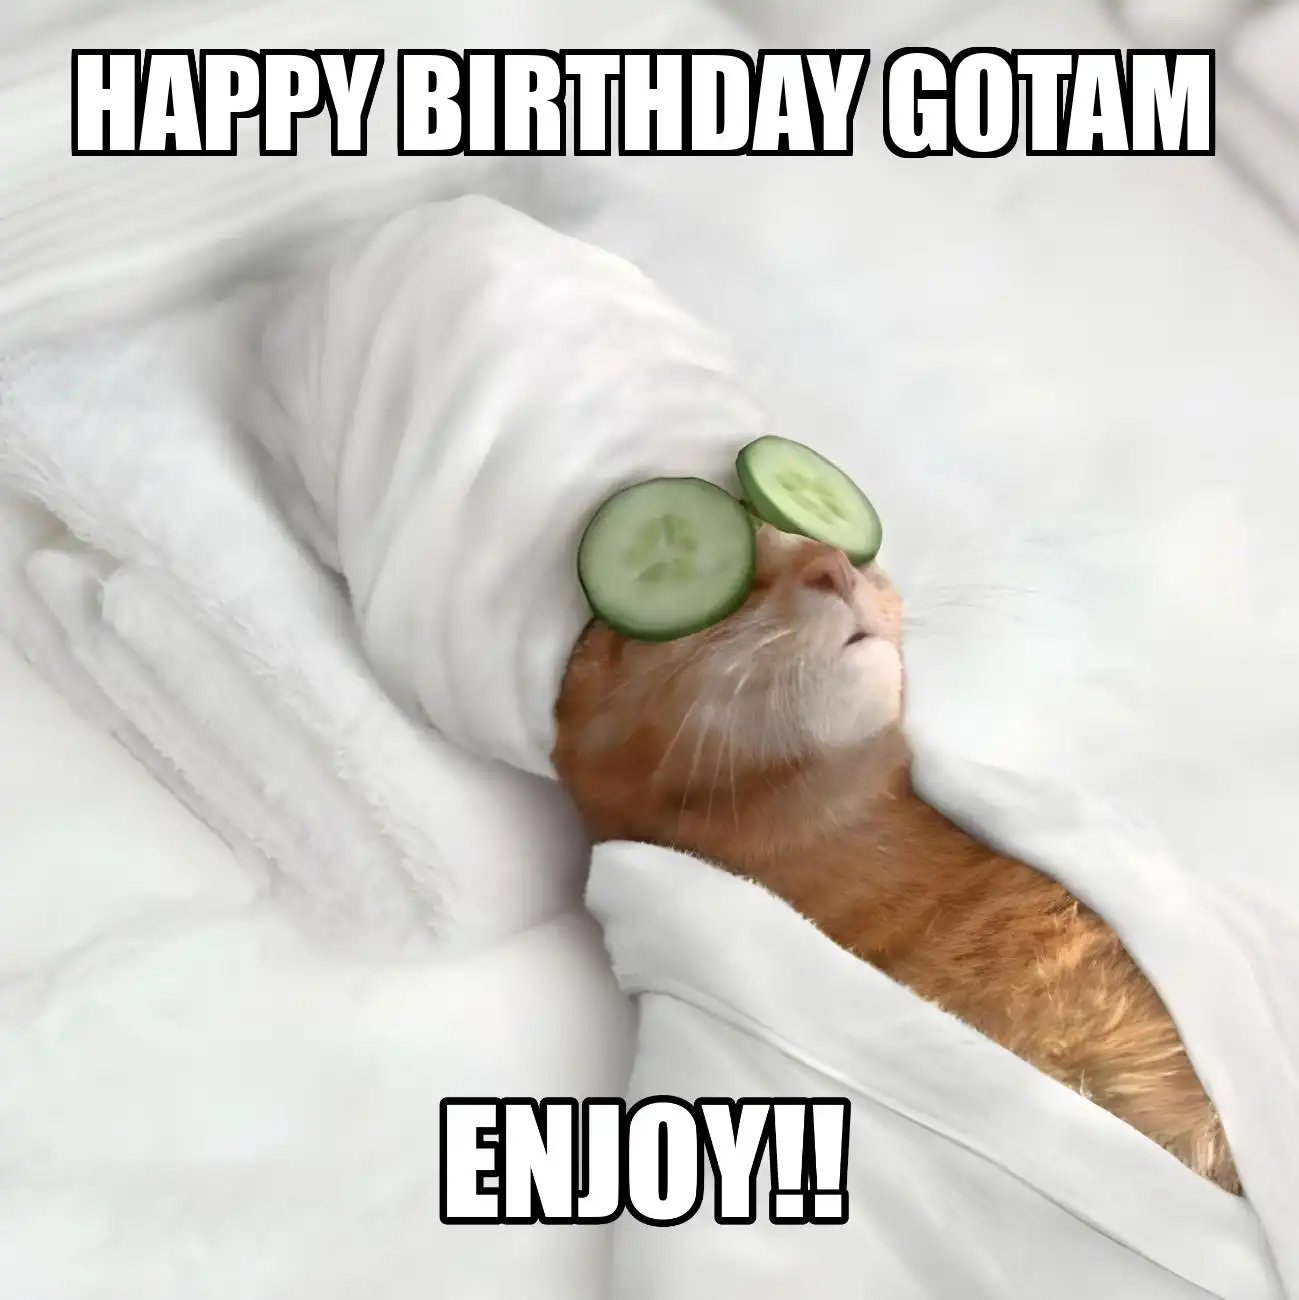 Happy Birthday Gotam Enjoy Cat Meme